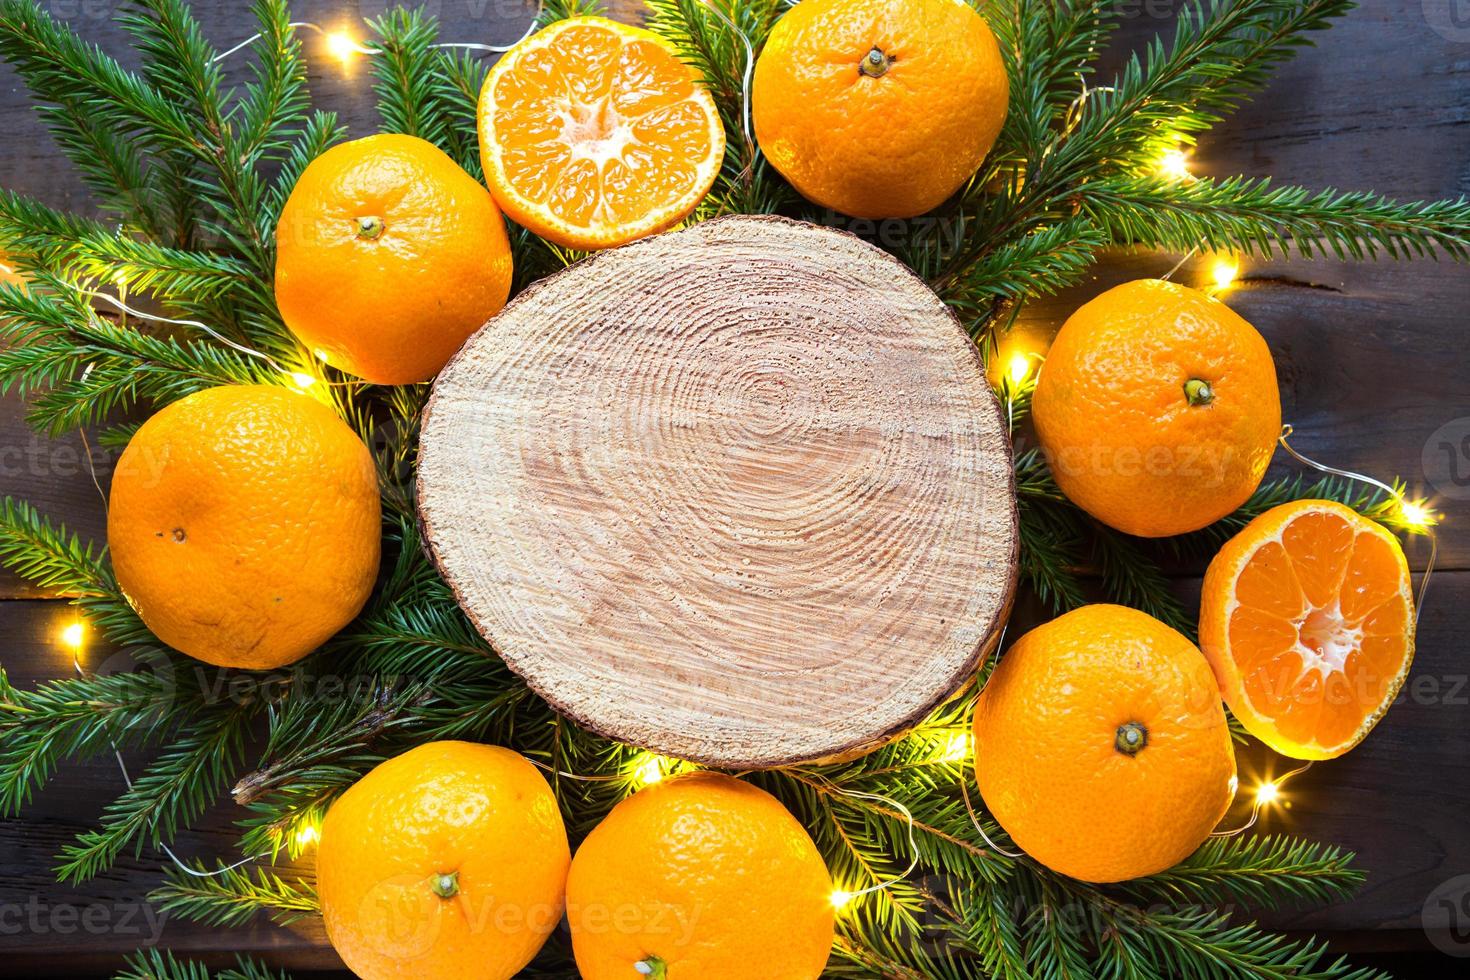 sfondo delle vacanze di capodanno sul taglio rotondo dell'albero circondato da mandarini, rami di abete vivi e ghirlande di luci dorate, con spazio in legno per il testo. aroma di agrumi, fette d'arancia, natale. telaio foto